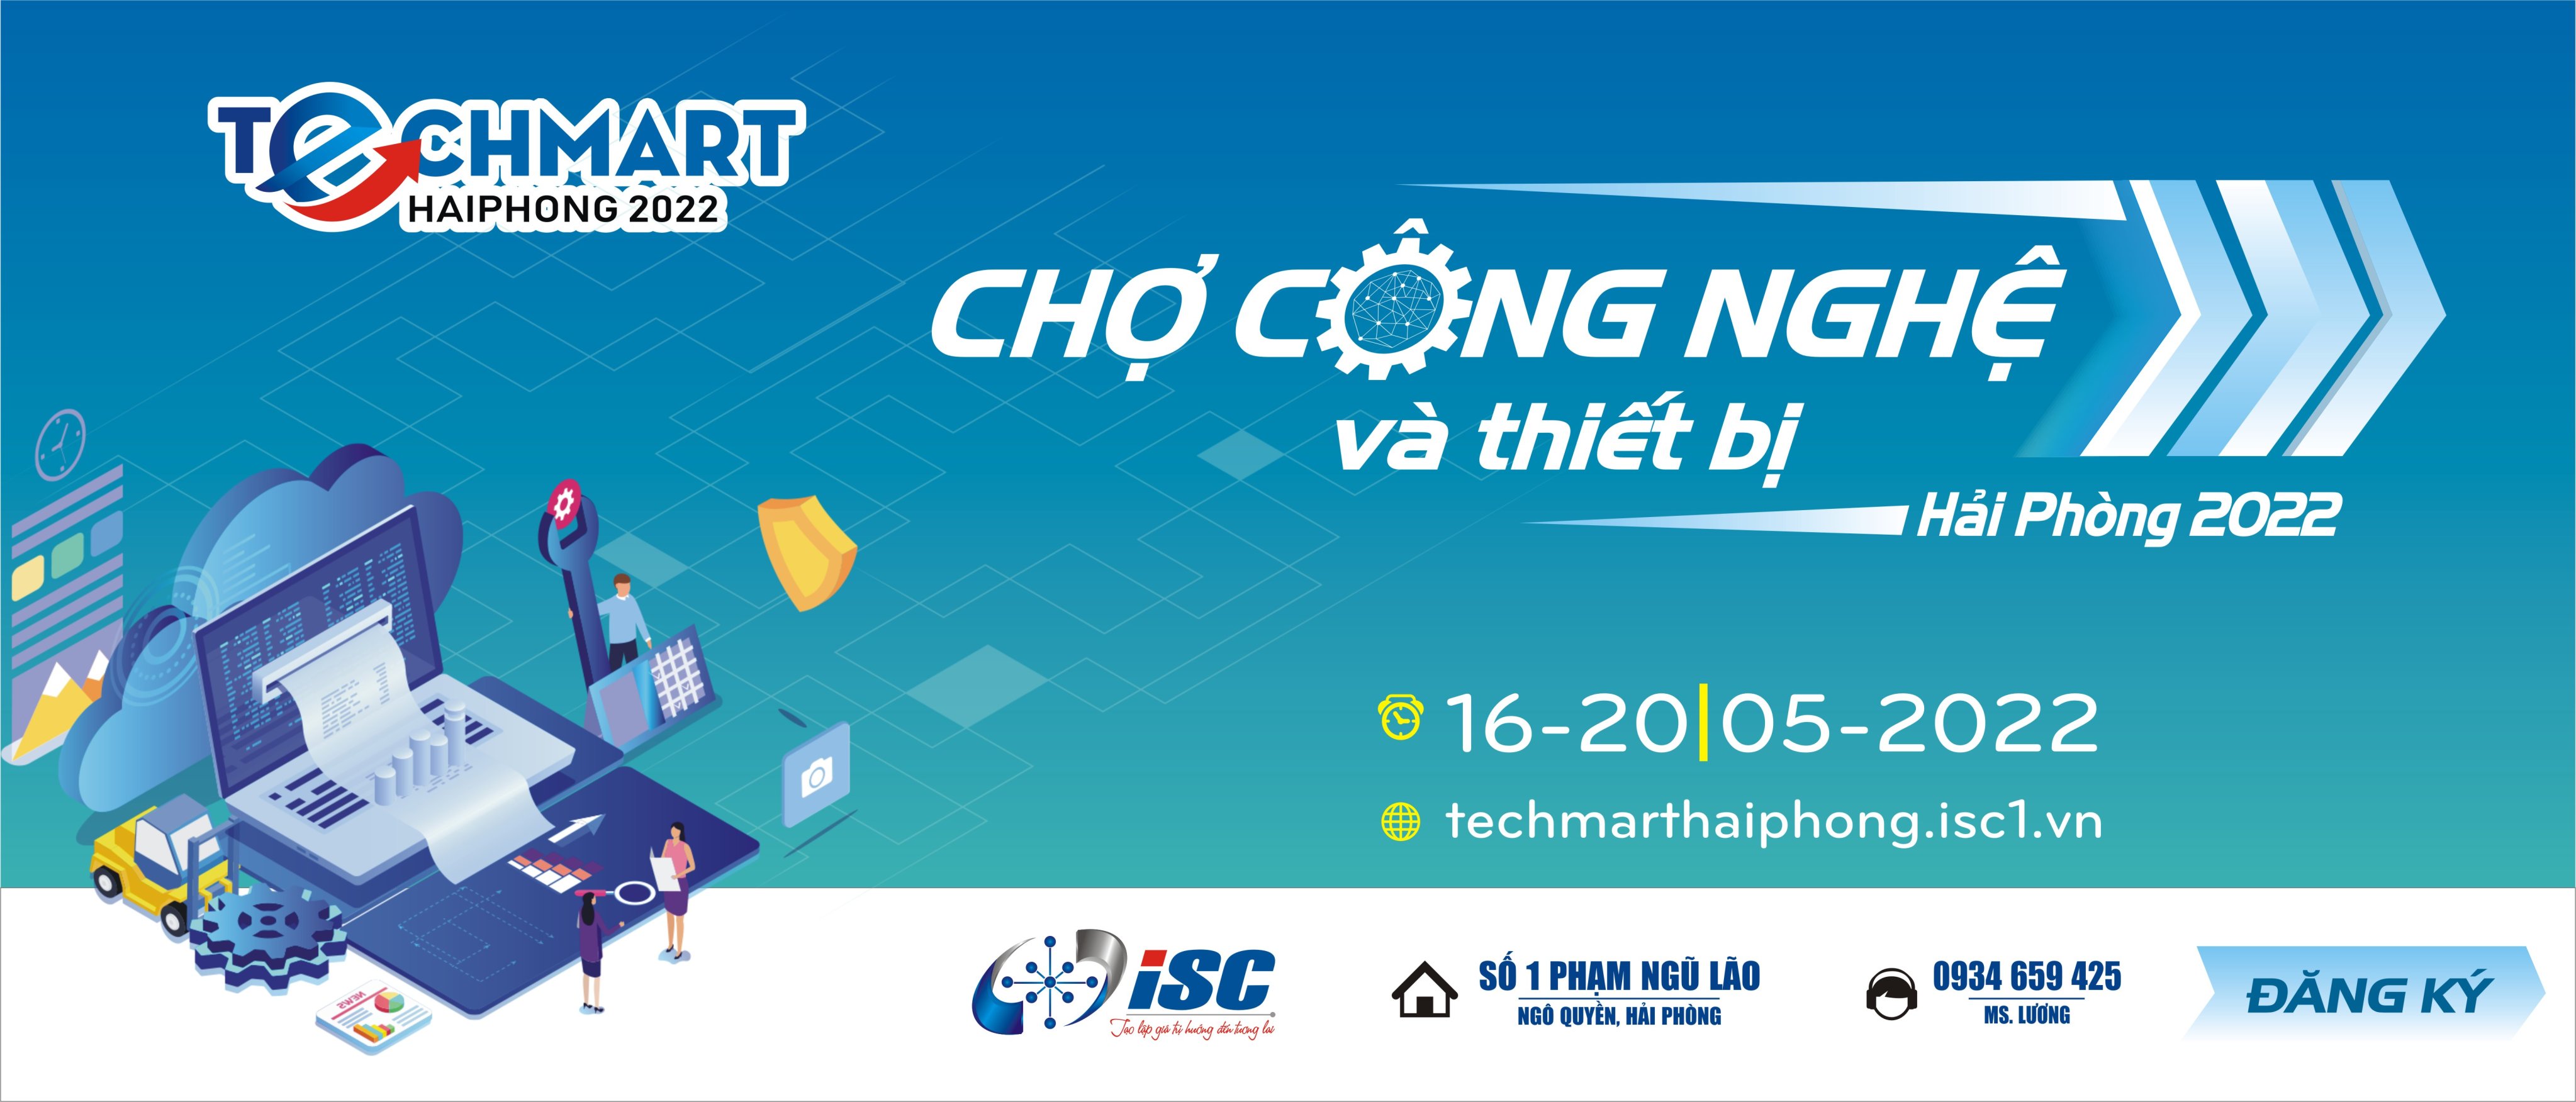 Chợ công nghệ và thiết bị Hải Phòng 2022 Techmarthaiphong